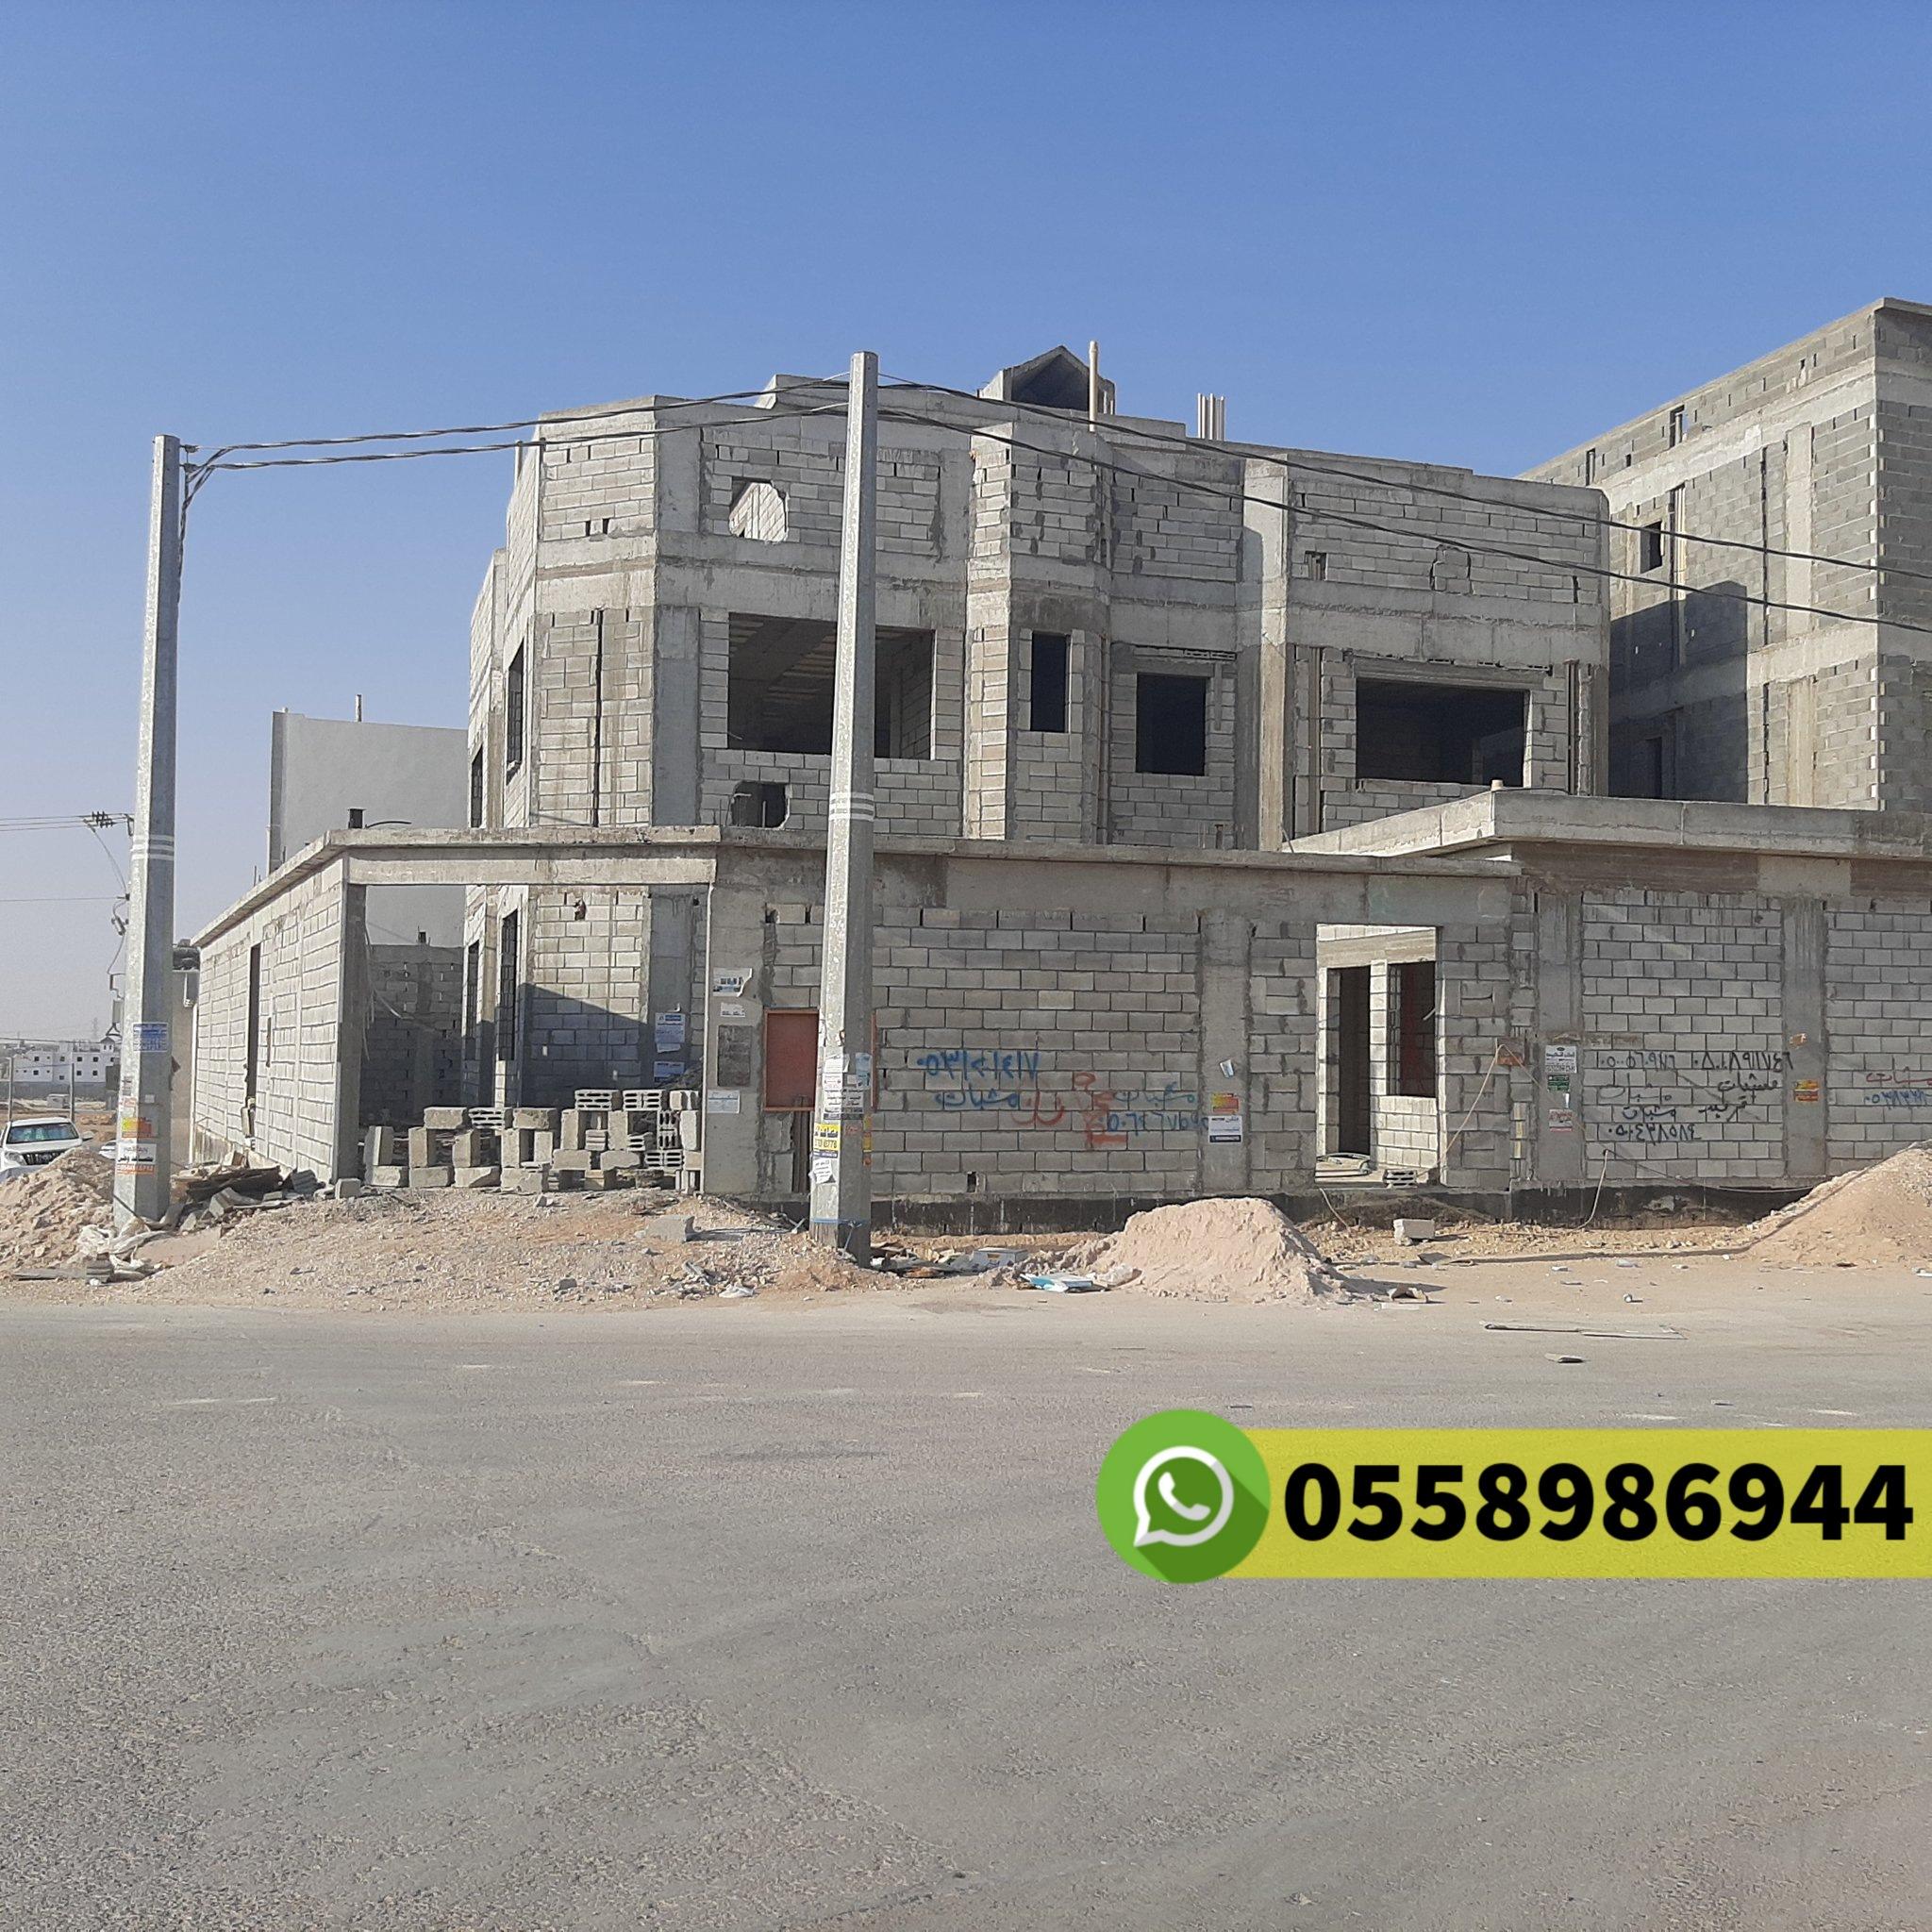 مقاول معماري في ابحر شمالية جدة جوال 0558986944 613719945